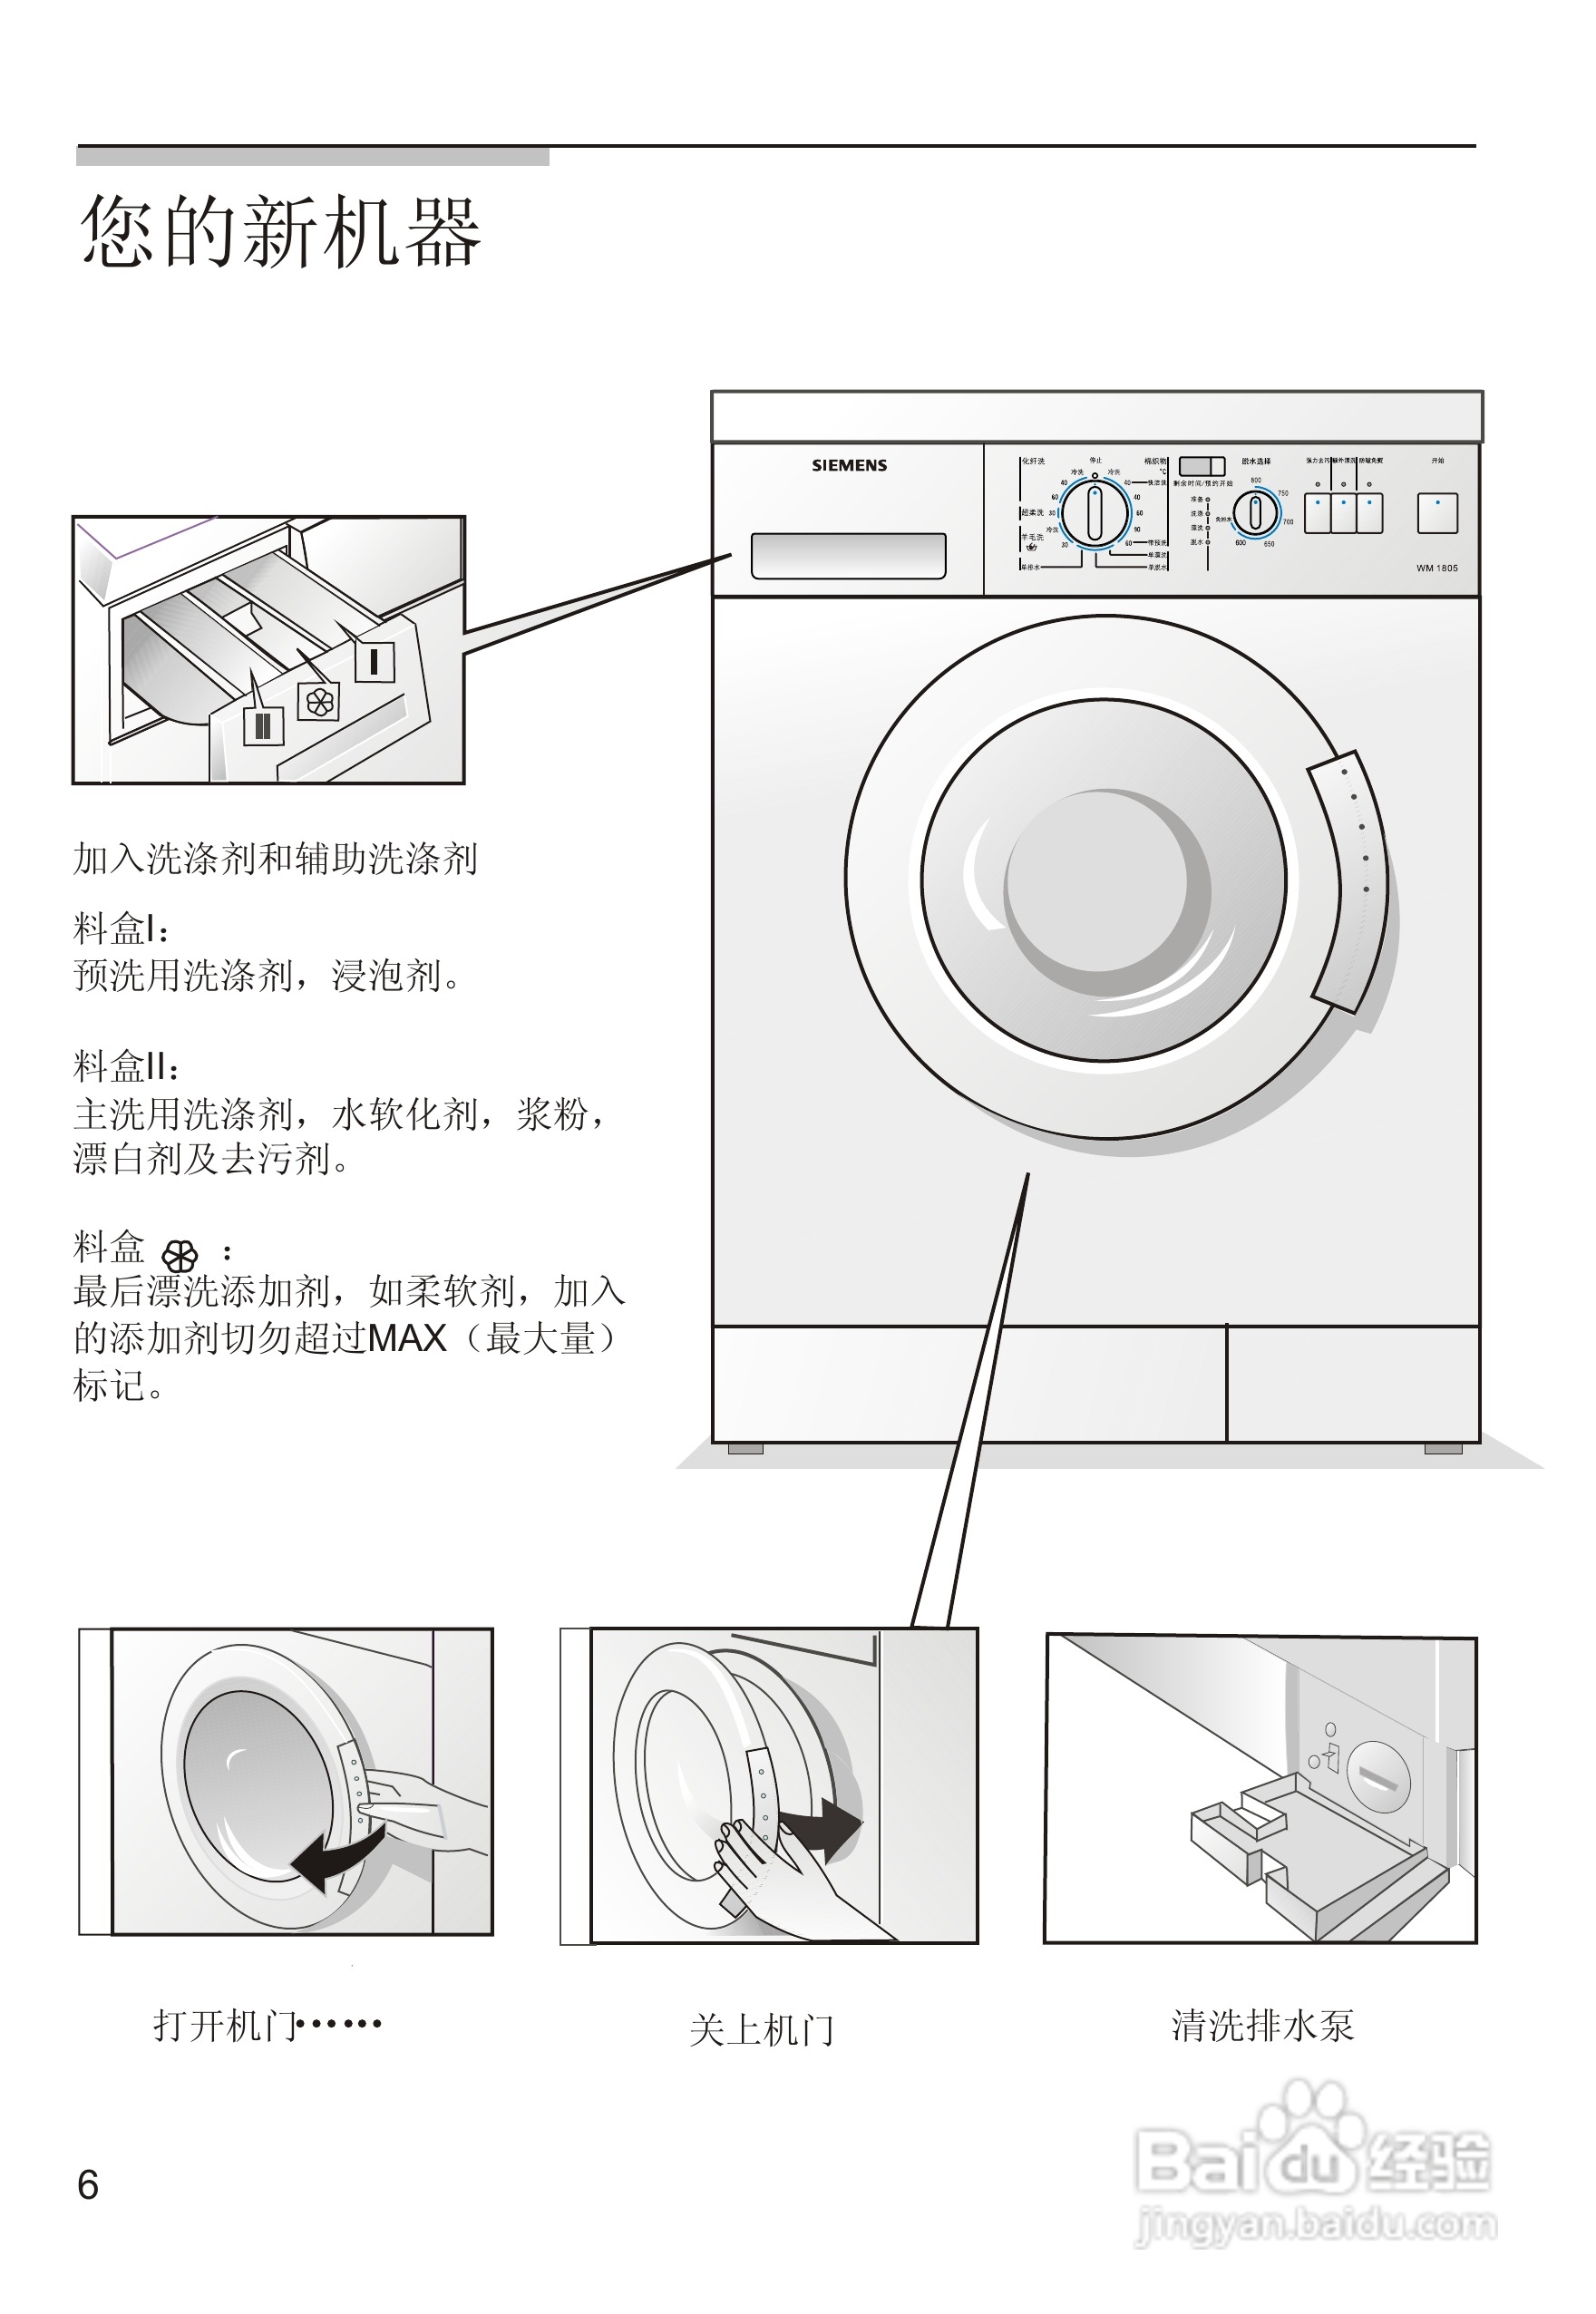 洗衣机符号图解和用法图片